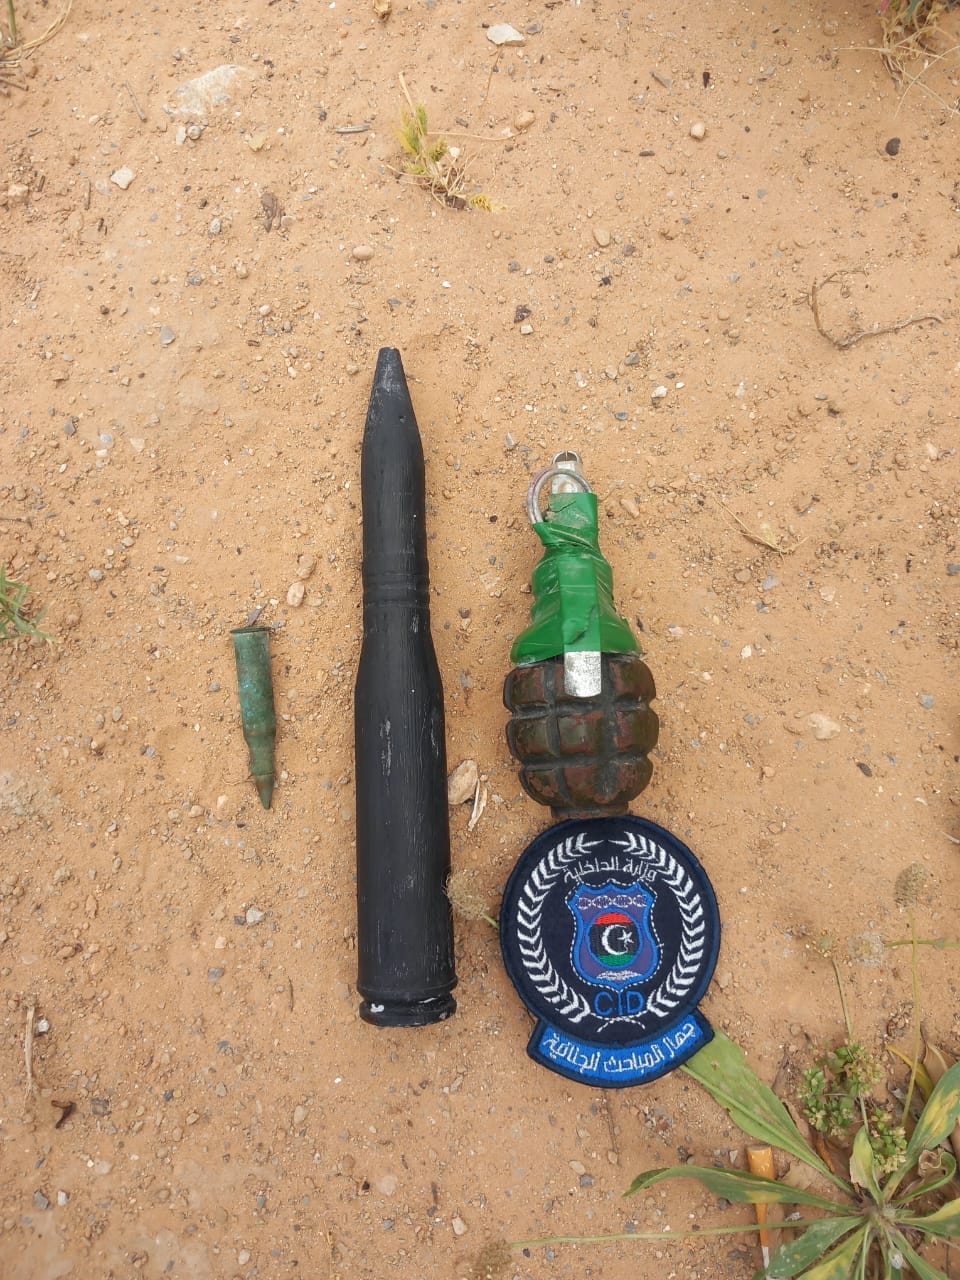 المباحث الجنائية تعلن العثور على قنبلة يدوية وإطلاقة نوع (14.5) ملم بمنطقة الحي الإسلامي في طرابلس .